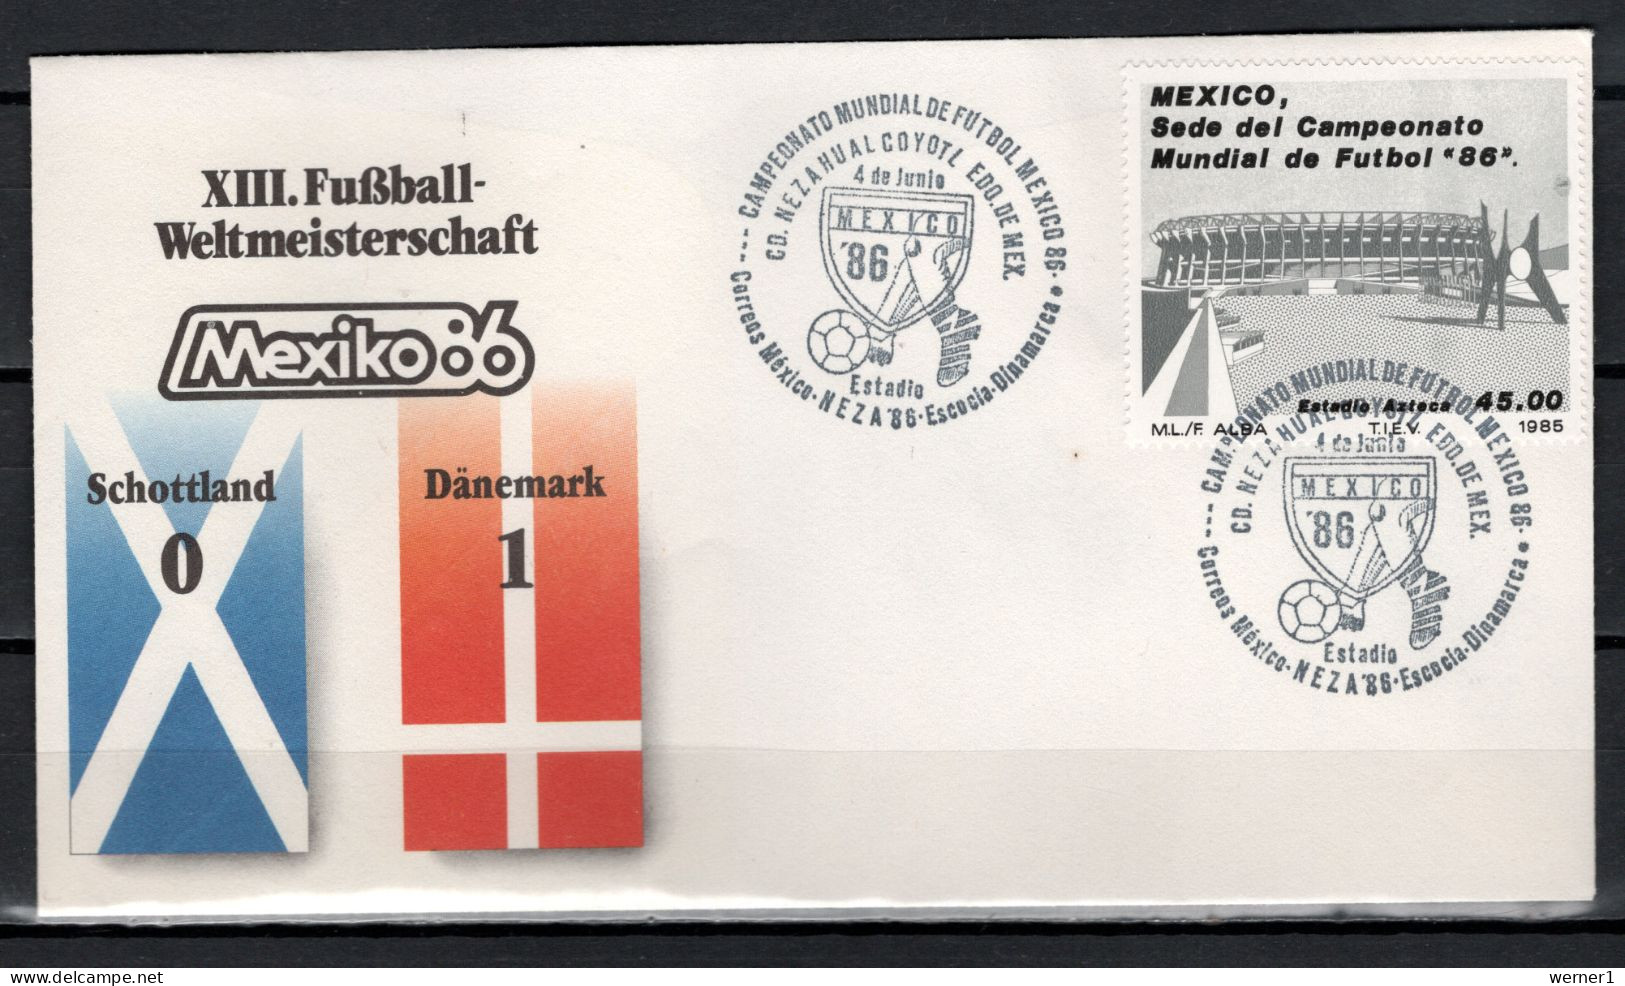 Mexico 1986 Football Soccer World Cup Commemorative Cover Match Scotland - Denmark 0 : 1 - 1986 – México